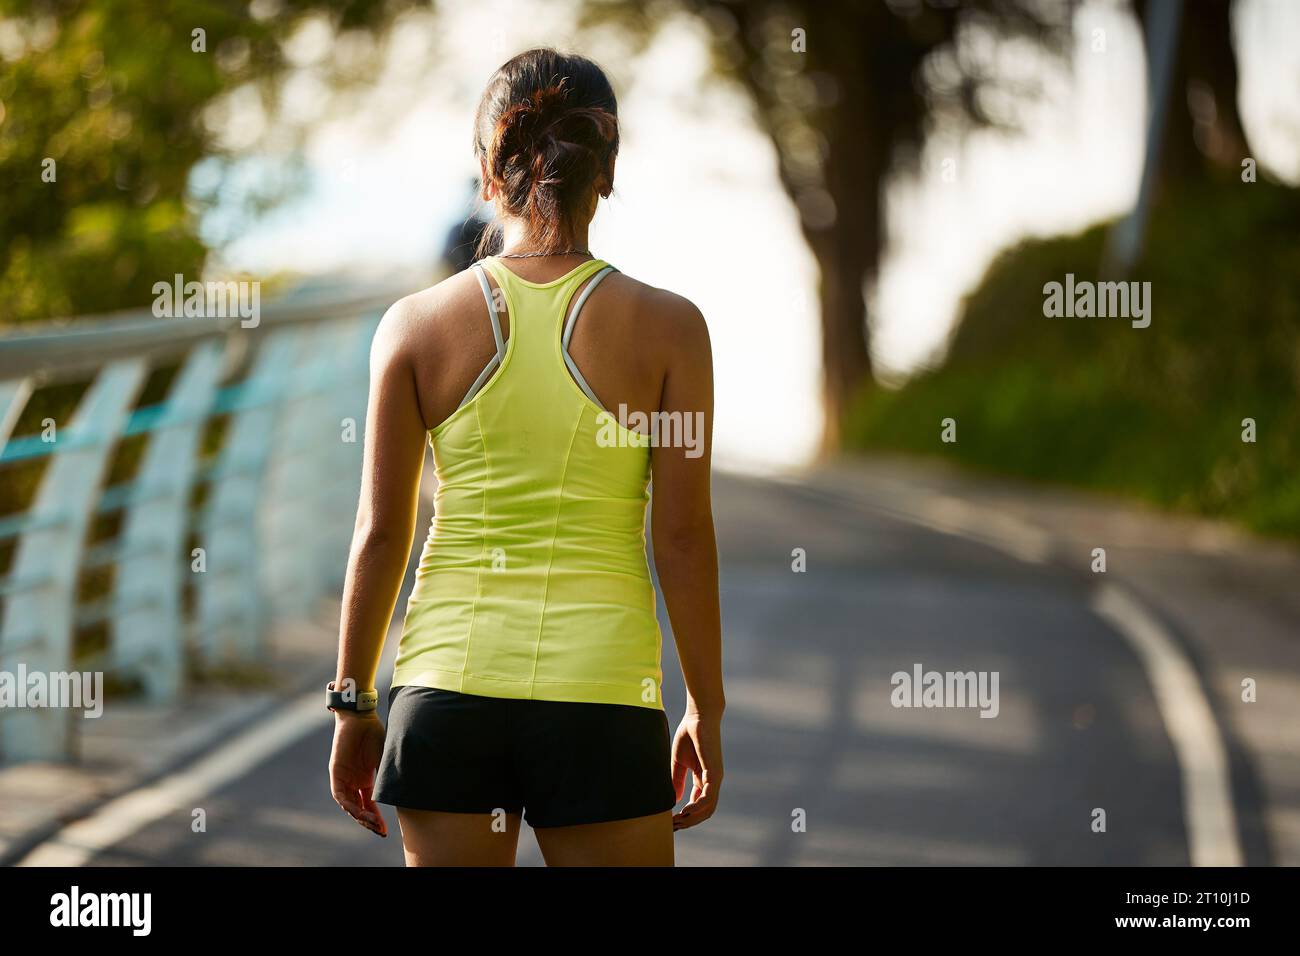 joven mujer asiática jogger femenino que hace ejercicio al aire libre en el parque de la ciudad Foto de stock